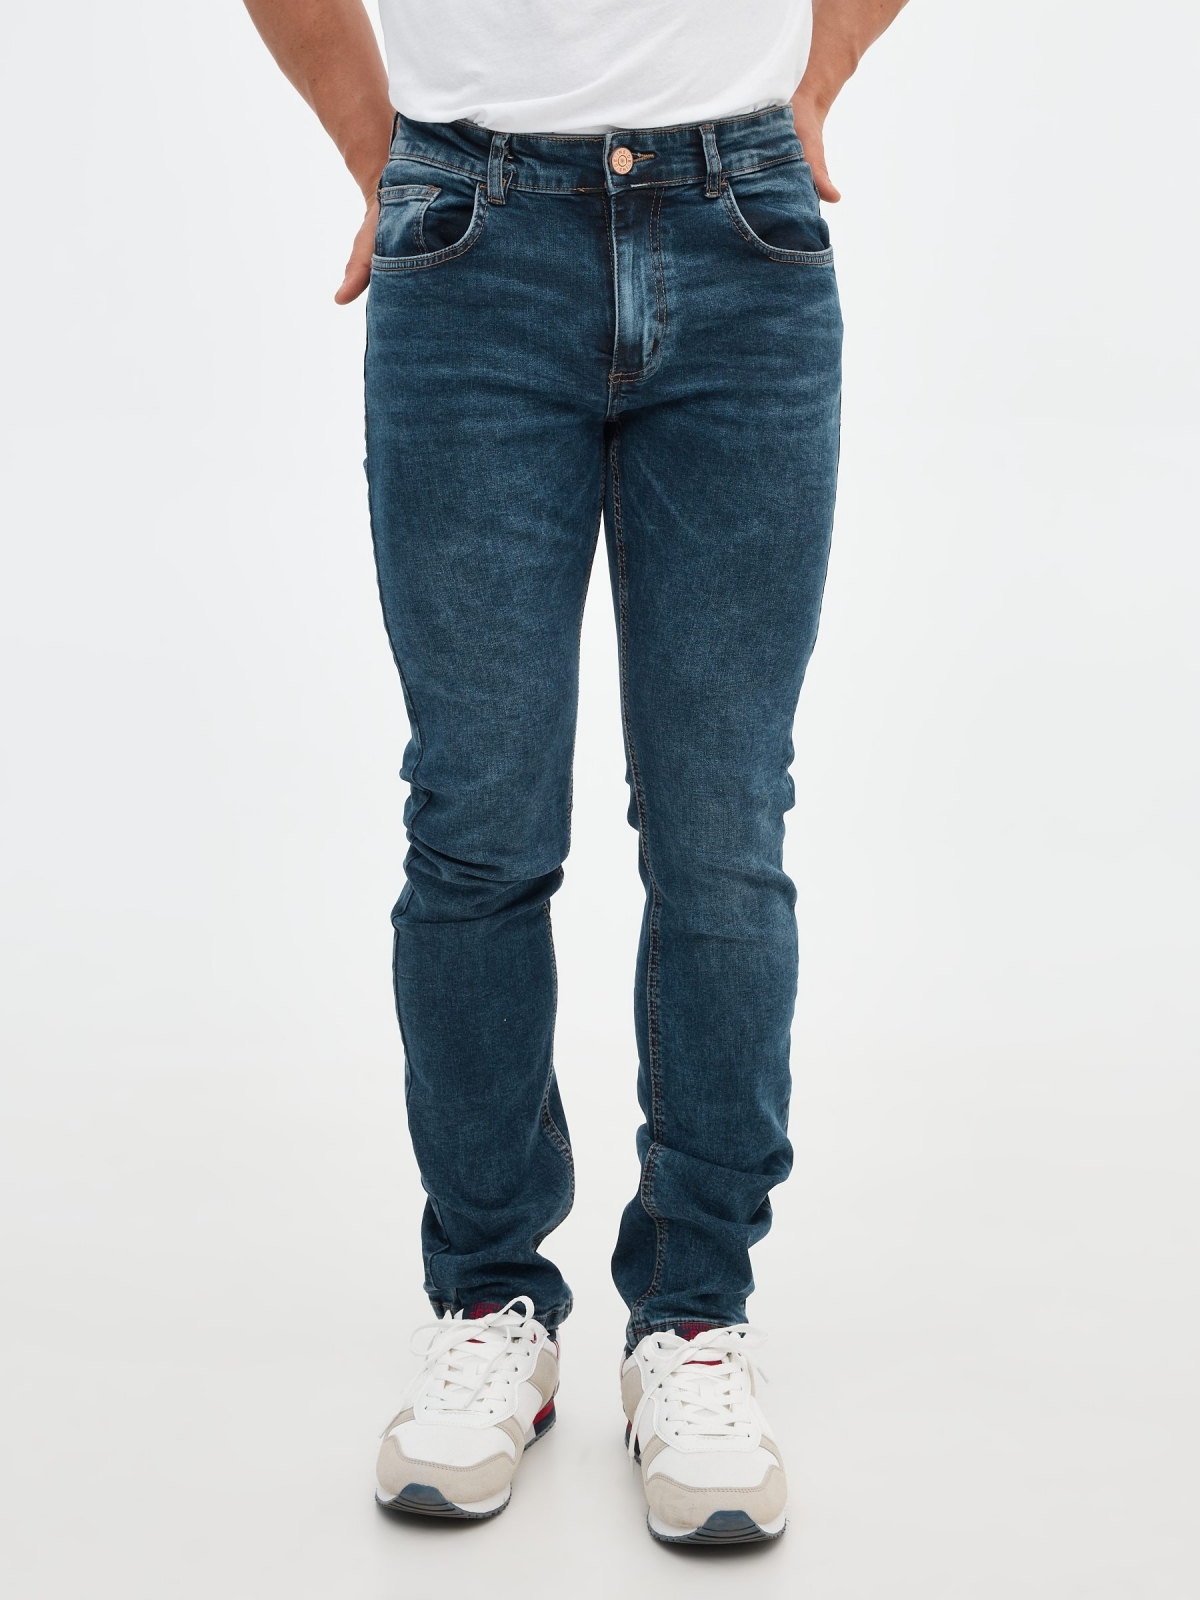 Jeans regular básicos azul vista media trasera